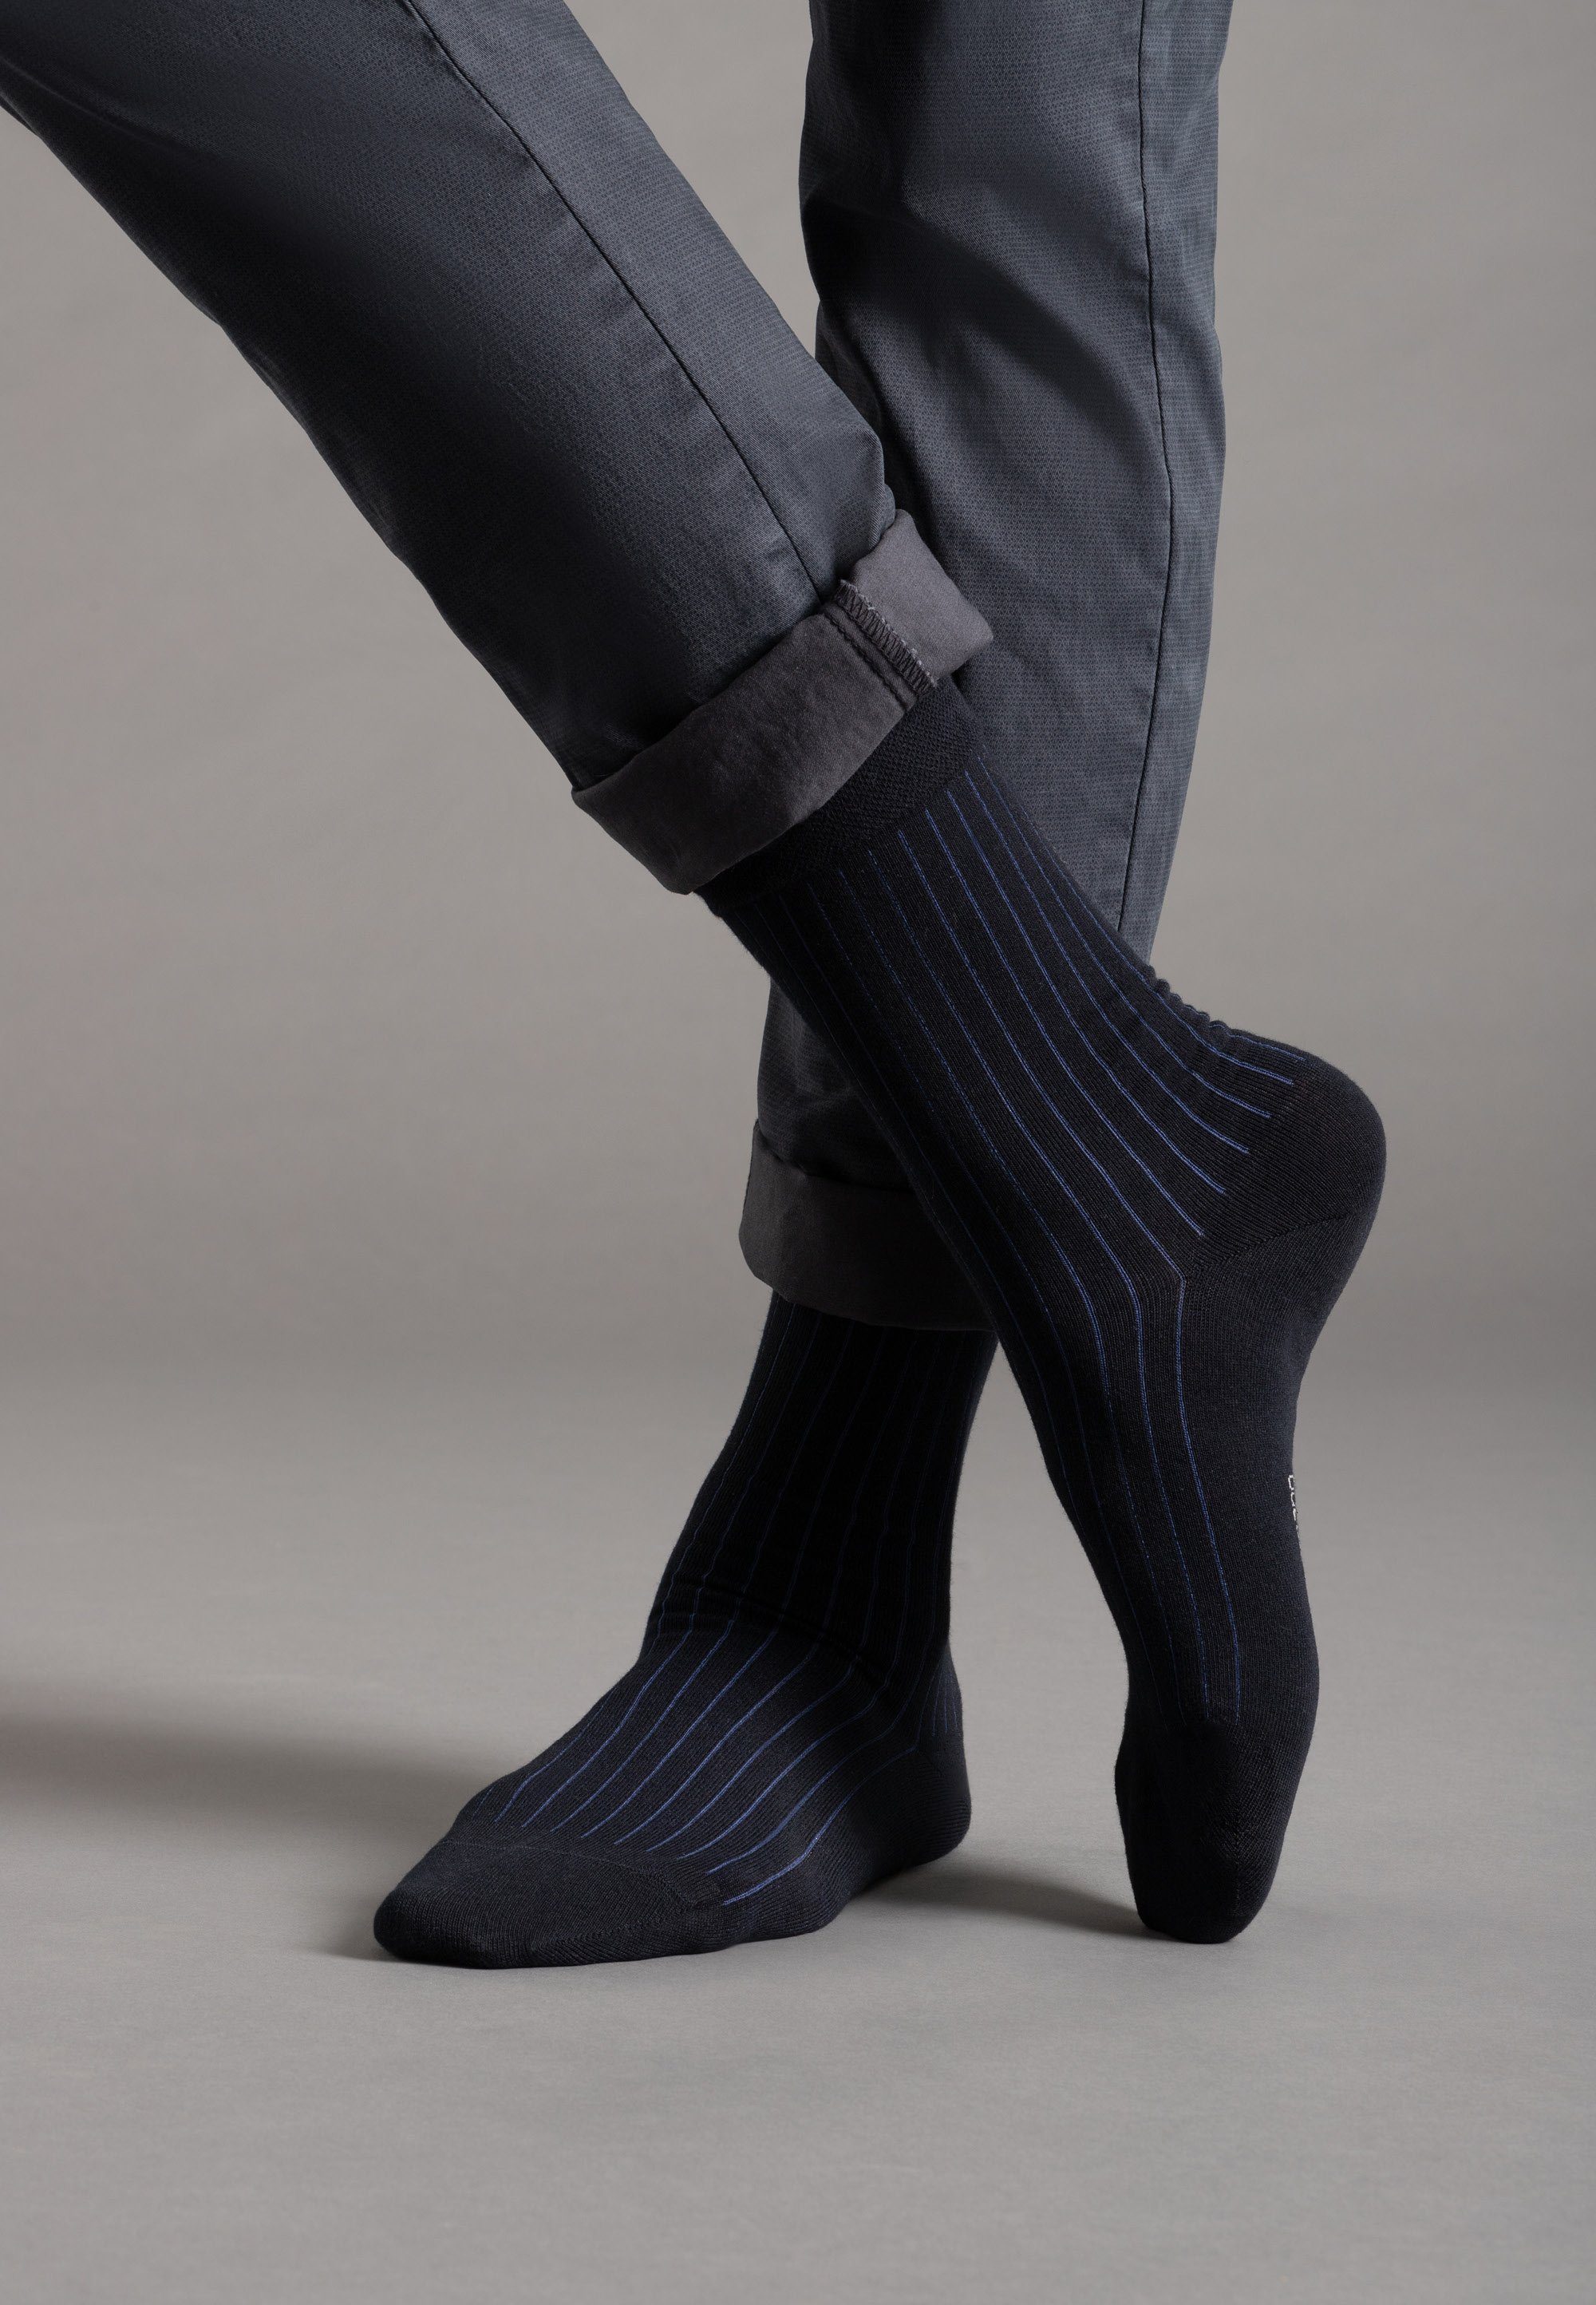 Camano blau, mit weichem dunkelblau (7-Paar) Socken ca-soft Komfortbund